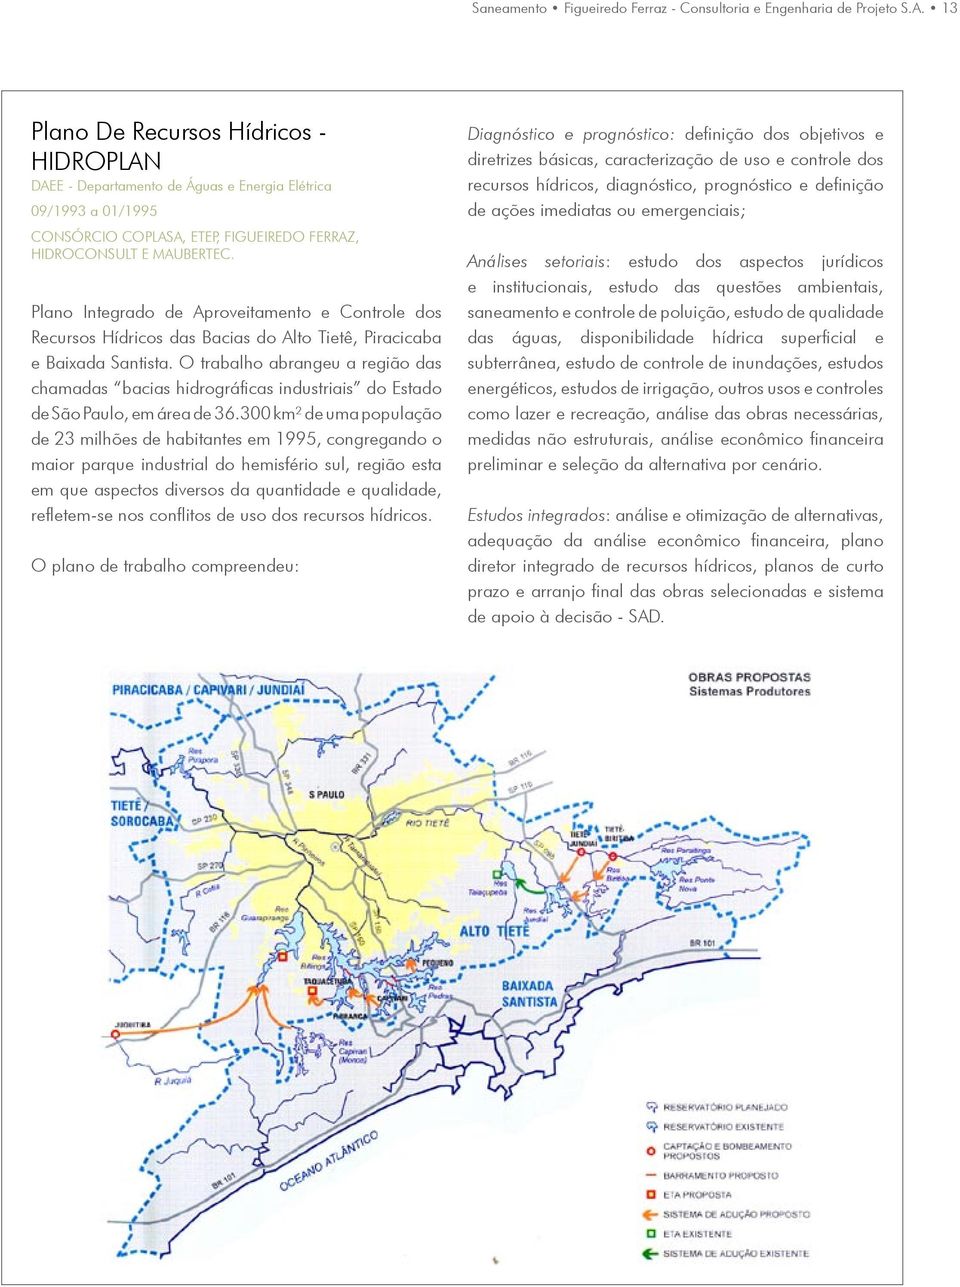 Plano Integrado de Aproveitamento e Controle dos Recursos Hídricos das Bacias do Alto Tietê, Piracicaba e Baixada Santista.